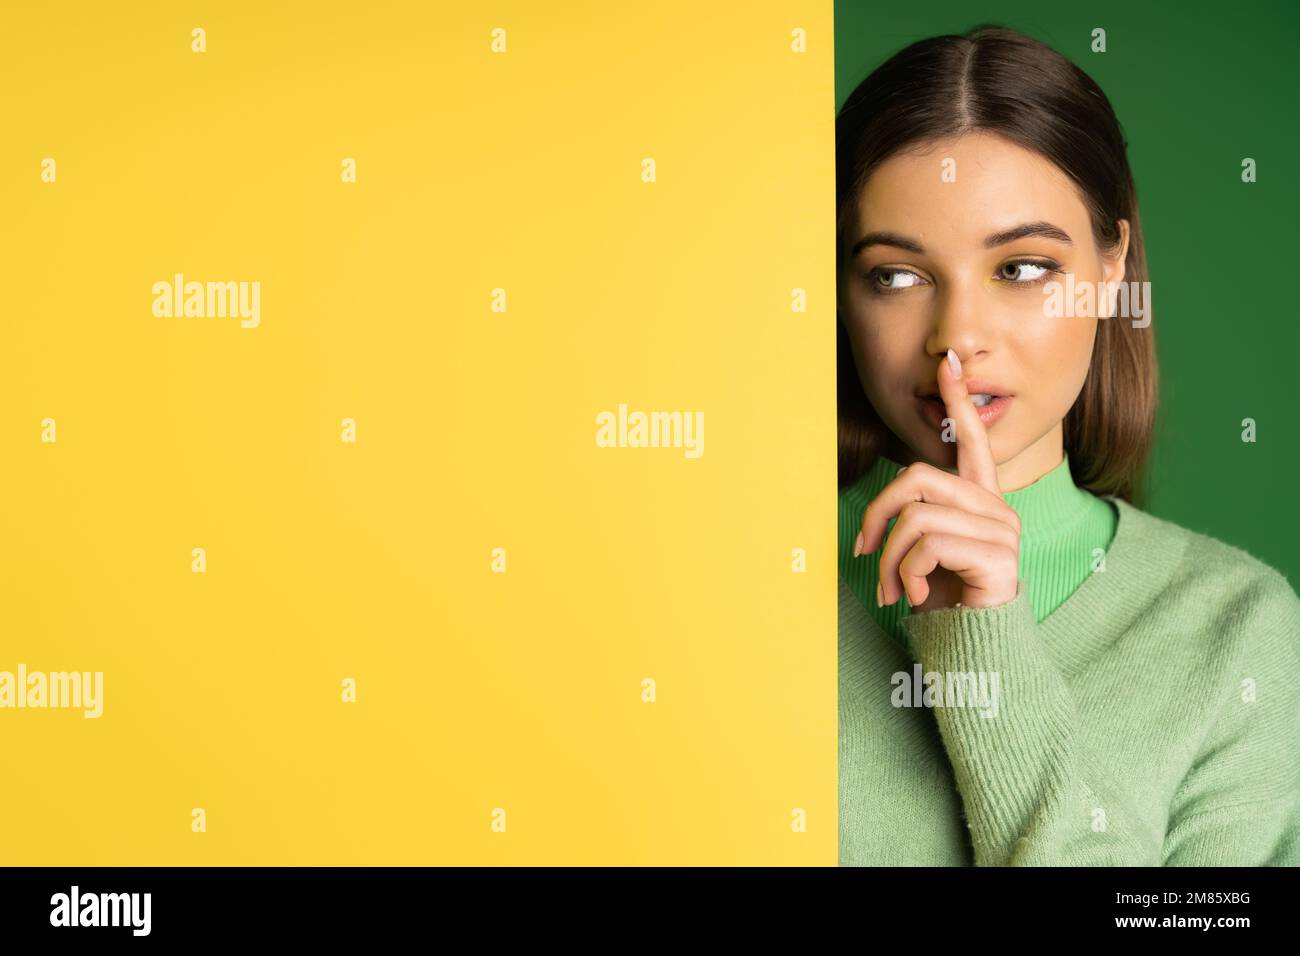 Braunes Teenager-Mädchen, das ein Sh-Schild neben gelbem und grünem Hintergrund zeigt Stockfoto